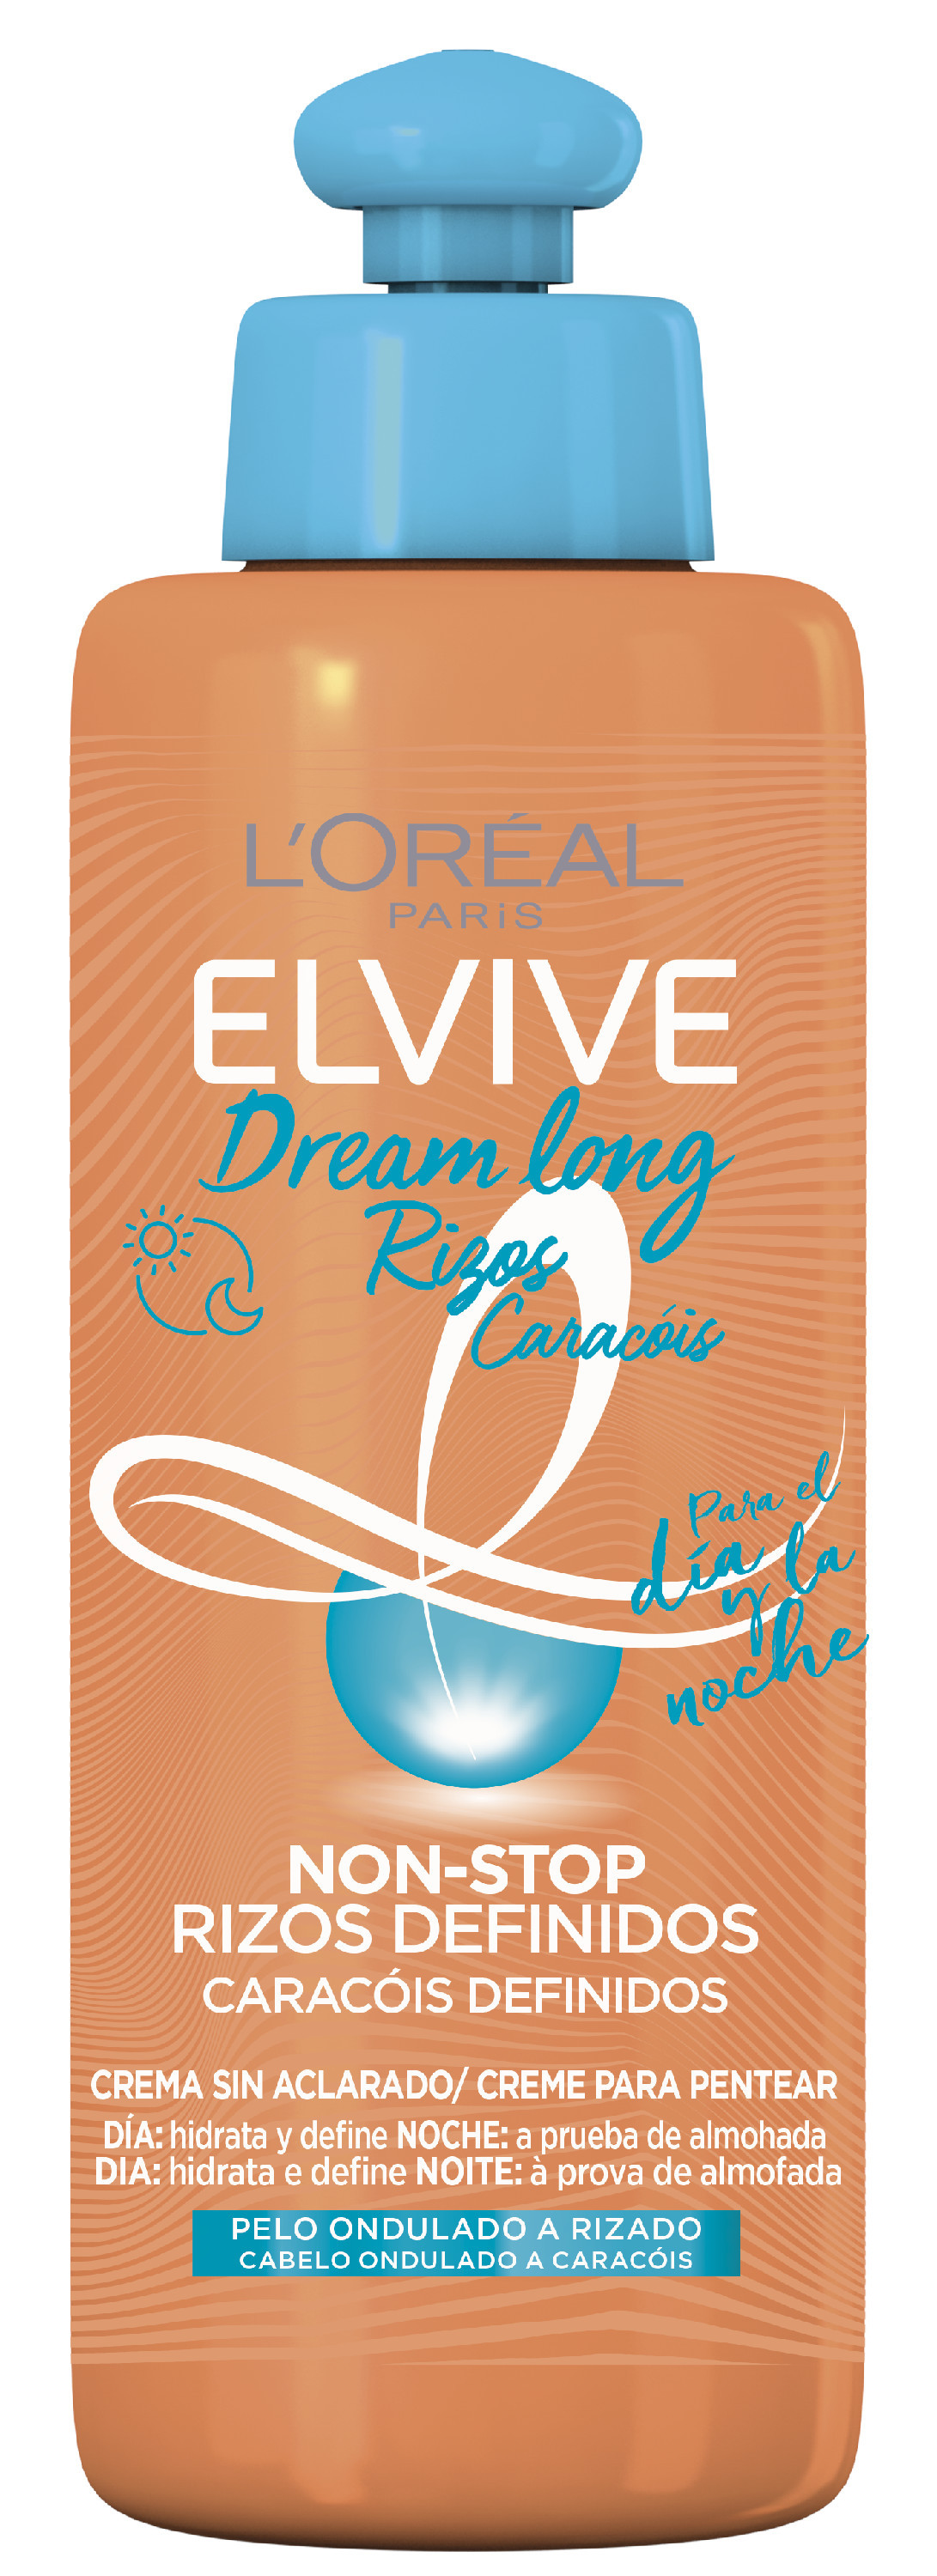 L'Oréal París ELVIVE Dream Long Non Stop Rizos Definidos